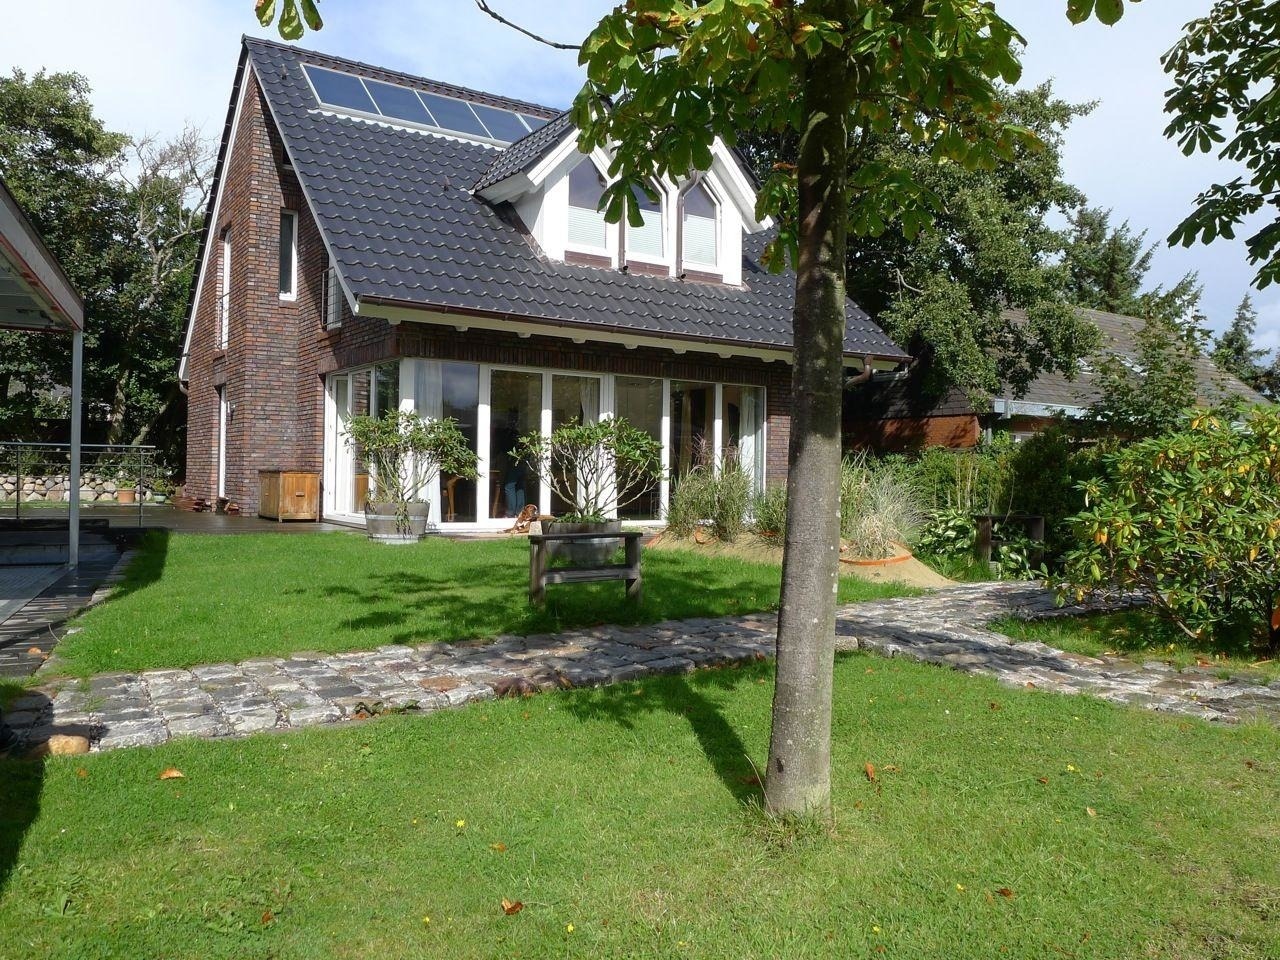 Haus Hookipa, App. 2 Ferienwohnung in Nordfriesland